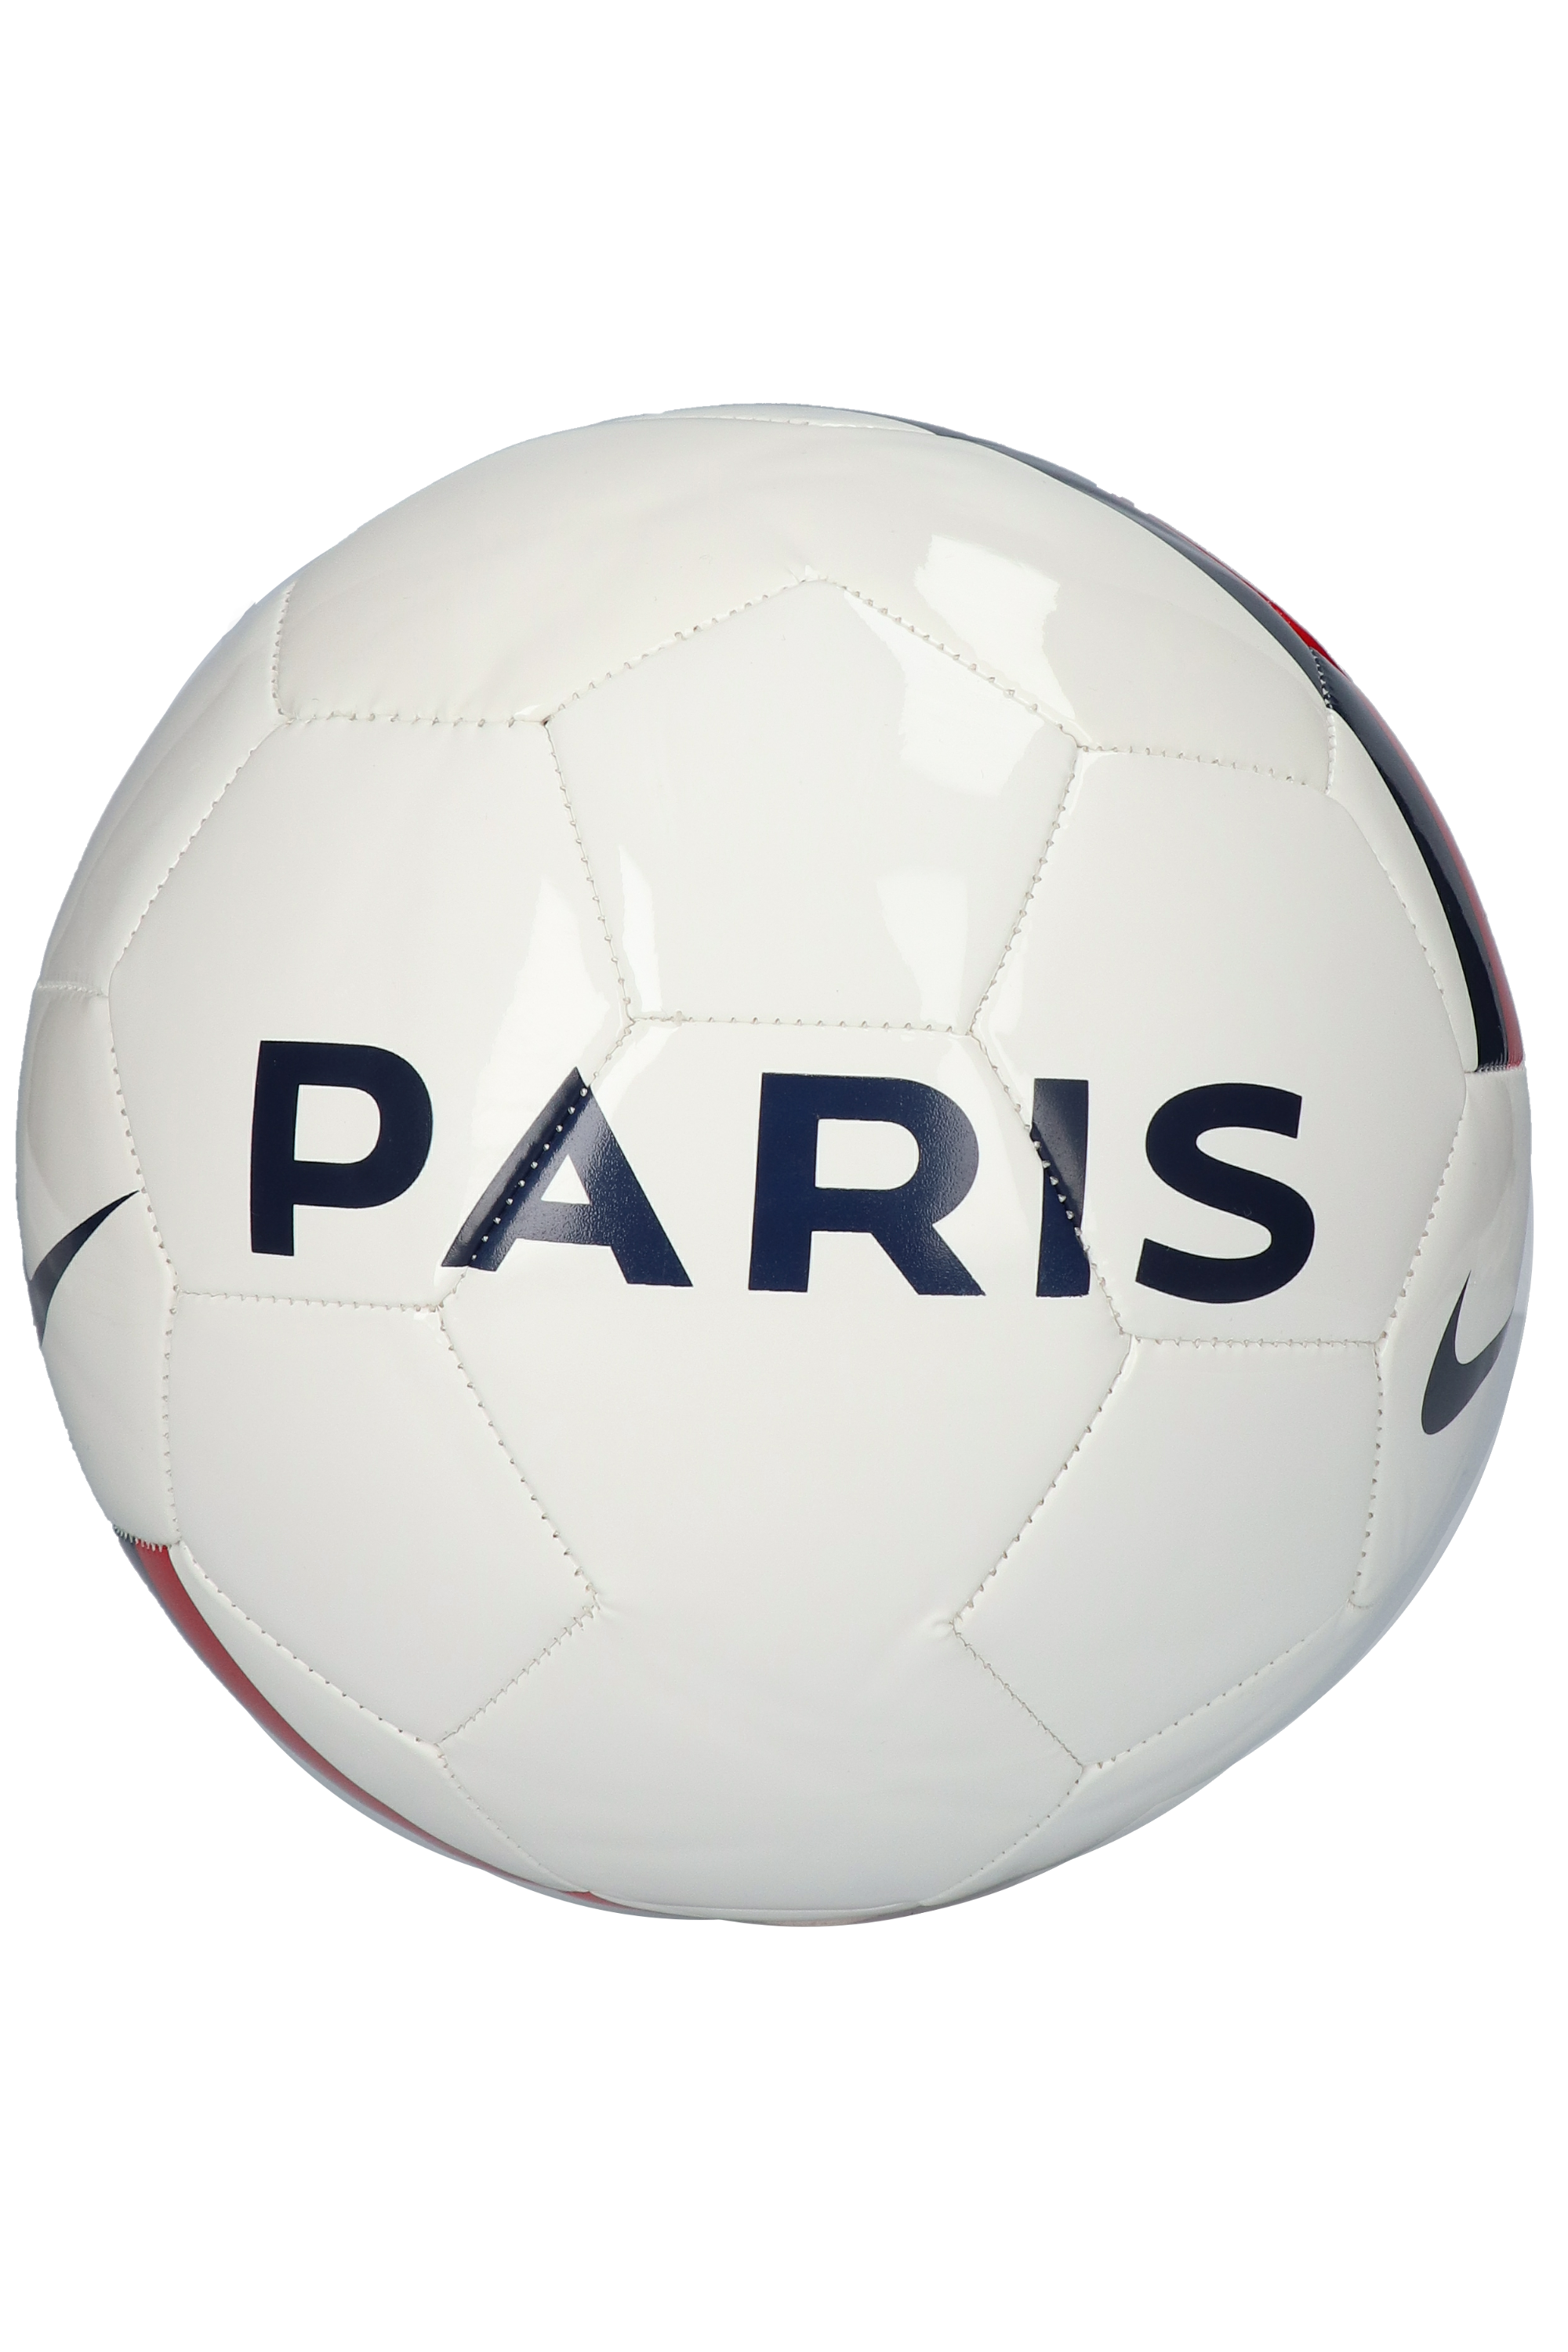 psg soccer ball size 5